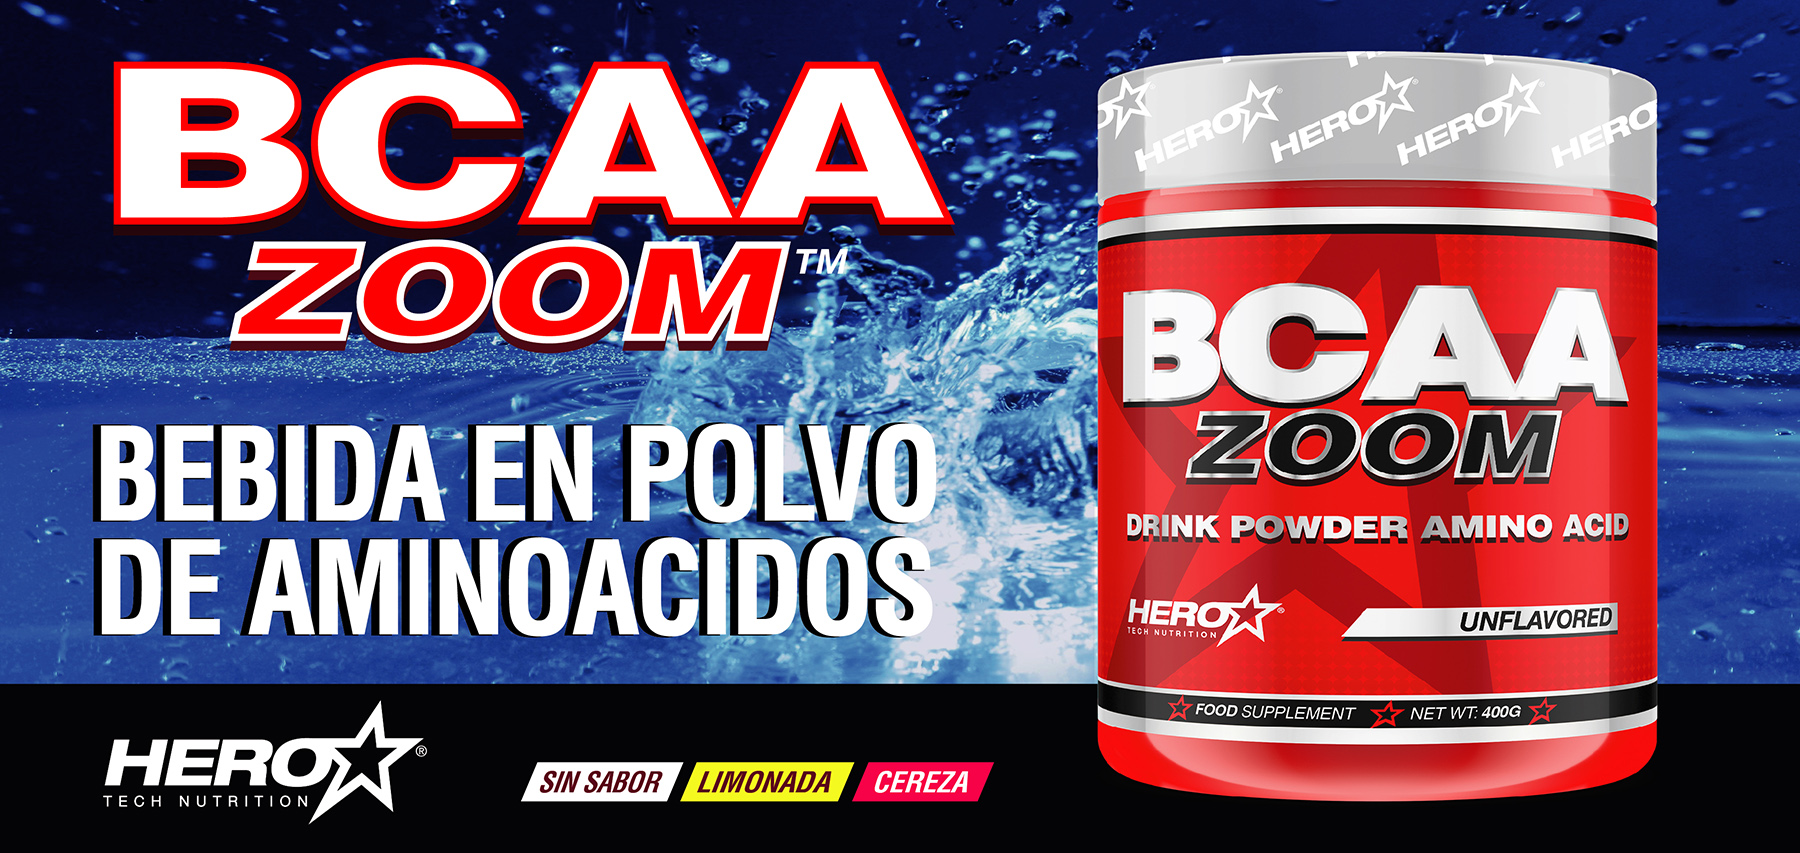 BCAA ZOOM AMINOACIDOS - HERO TECH NUTRITION herotechnutrition